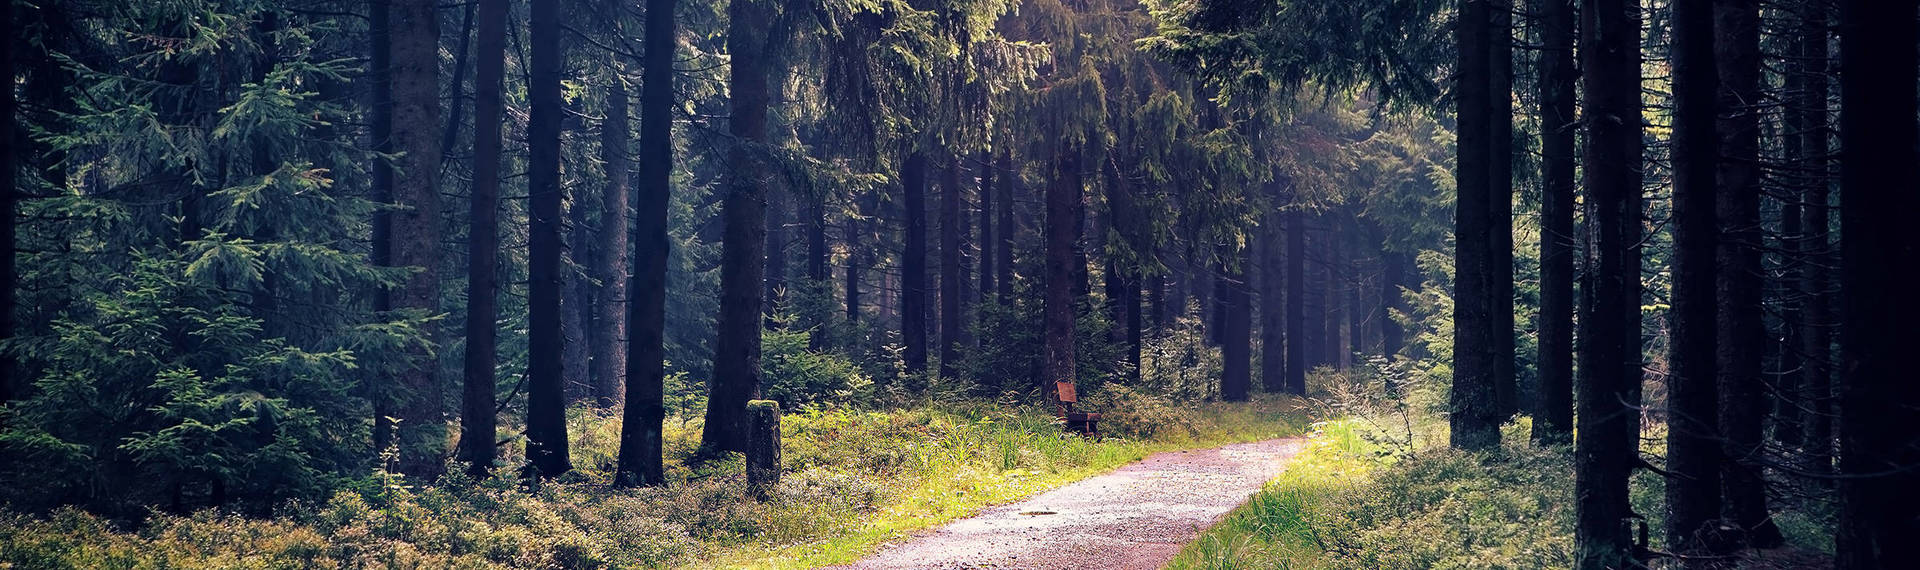 Urlaub im Thüringer Wald mit H-Hotels.com - Offizielle Webseite